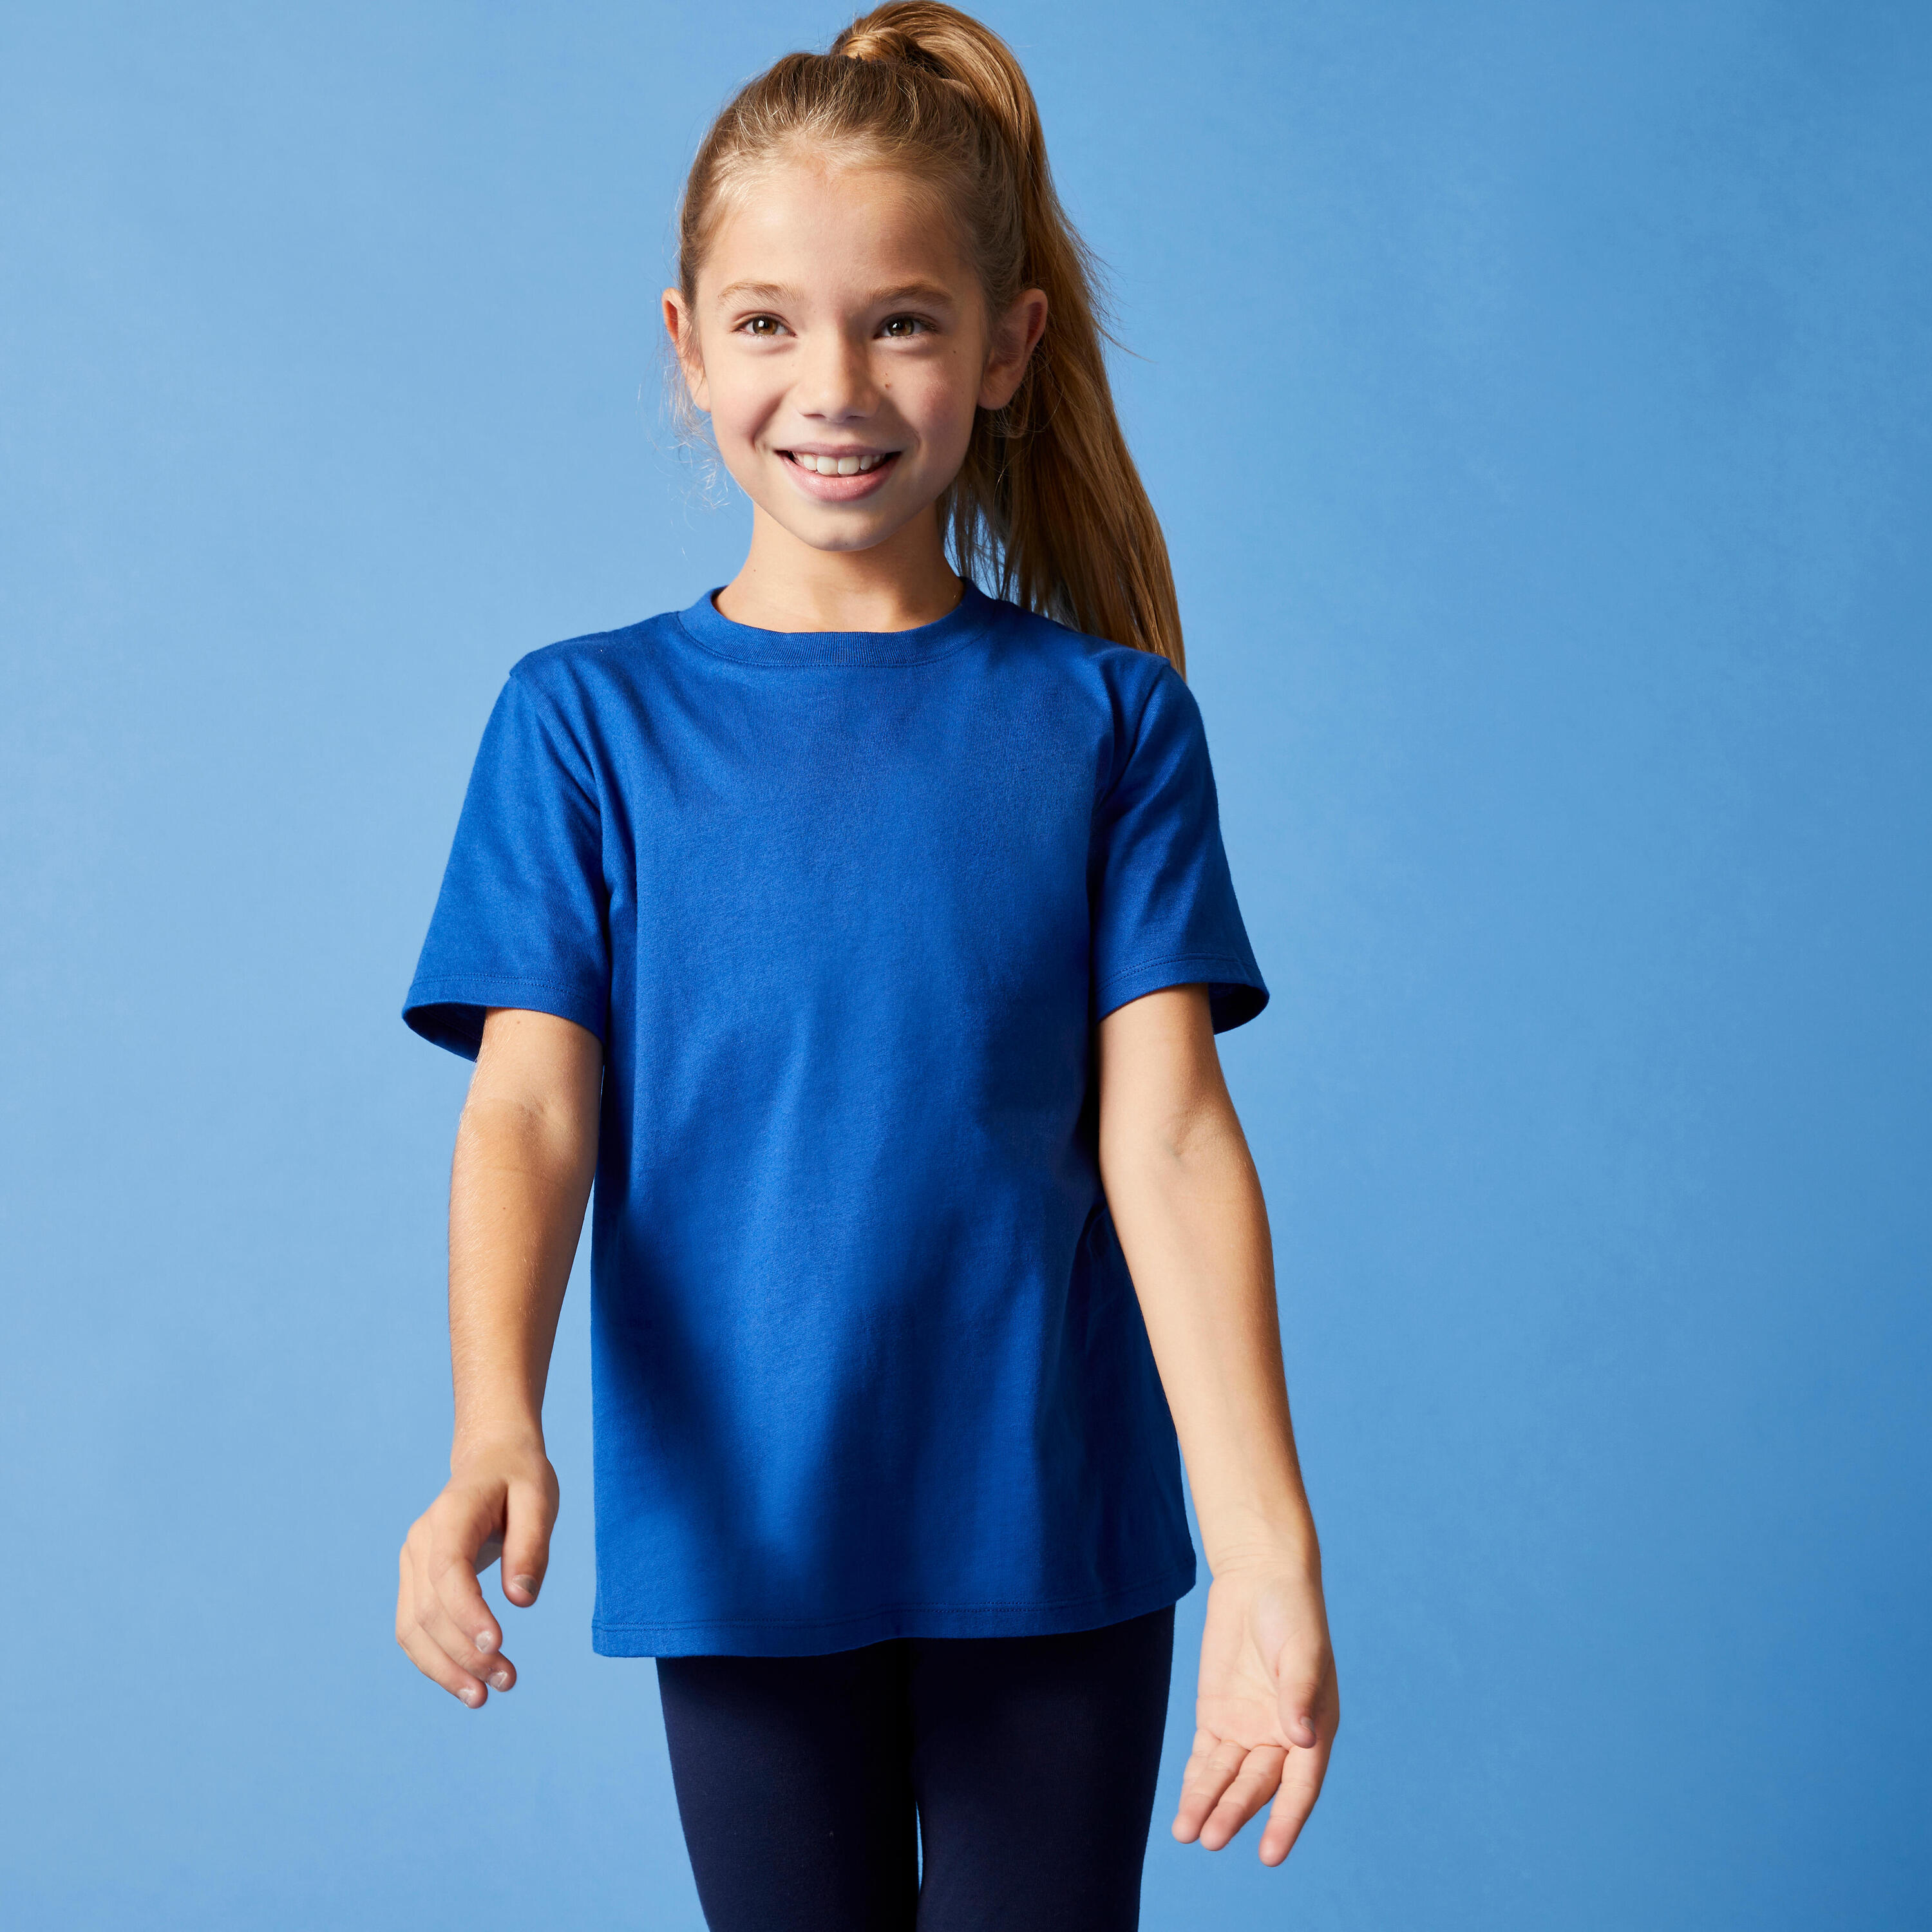 Kids' Unisex Cotton T-Shirt - Blue 3/7